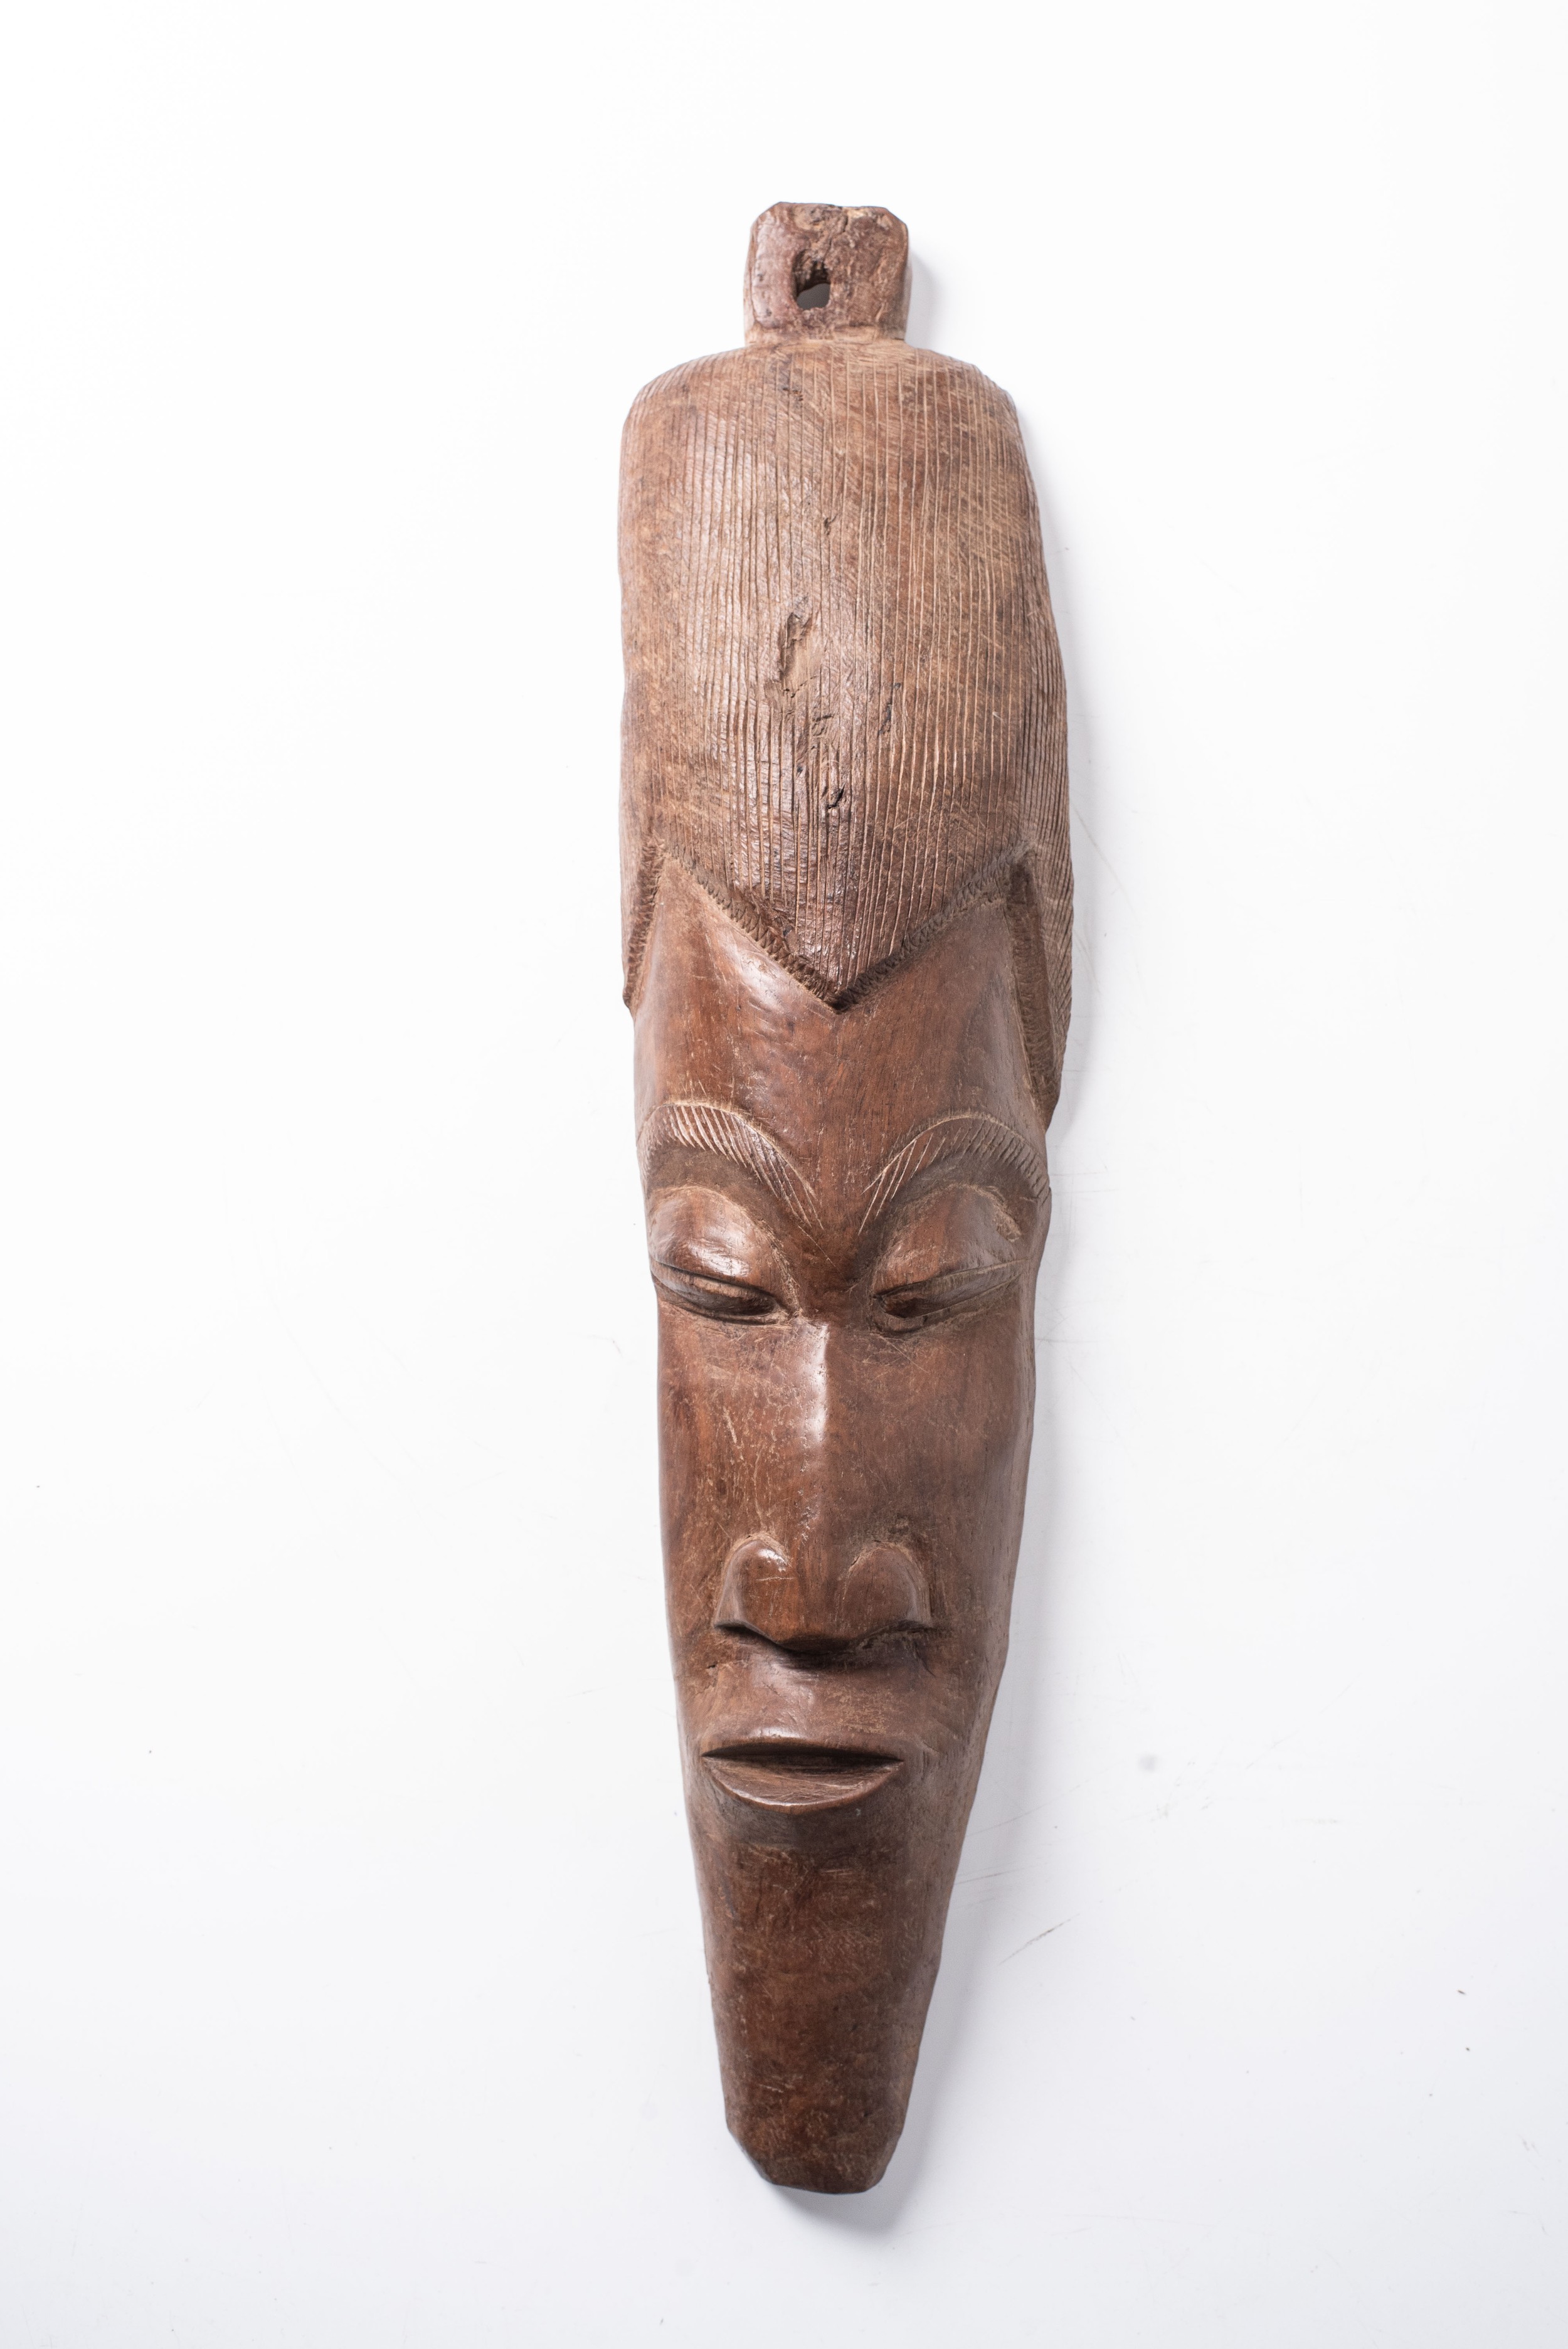 AN AFRICAN WOODEN MASK 70cm high, 22cm wide